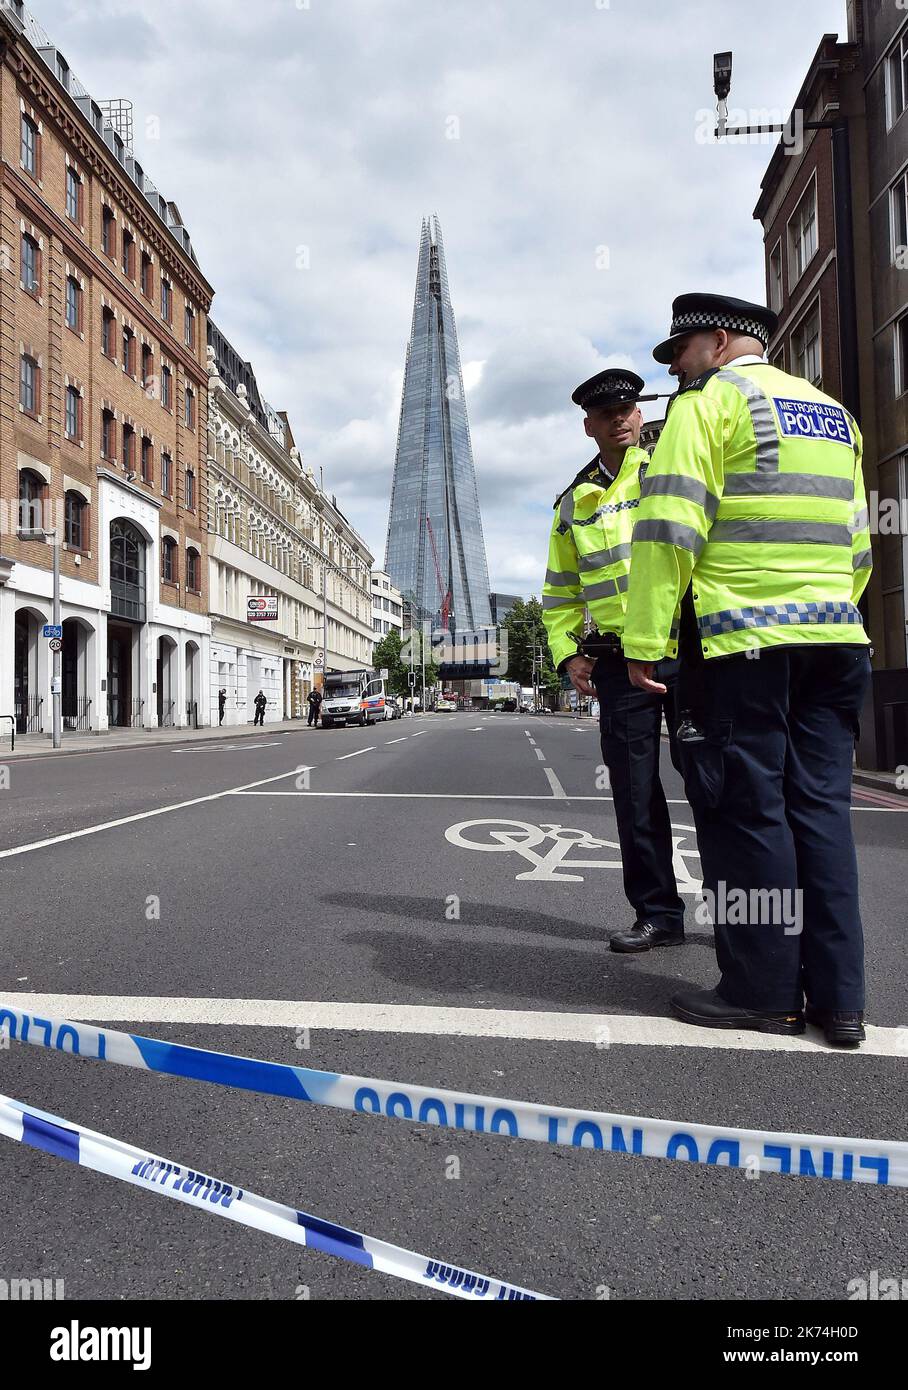 LONDRES Quelques heures après près de la scène de l'incident terroriste de la nuit dernière, 4 juin 2017 Banque D'Images